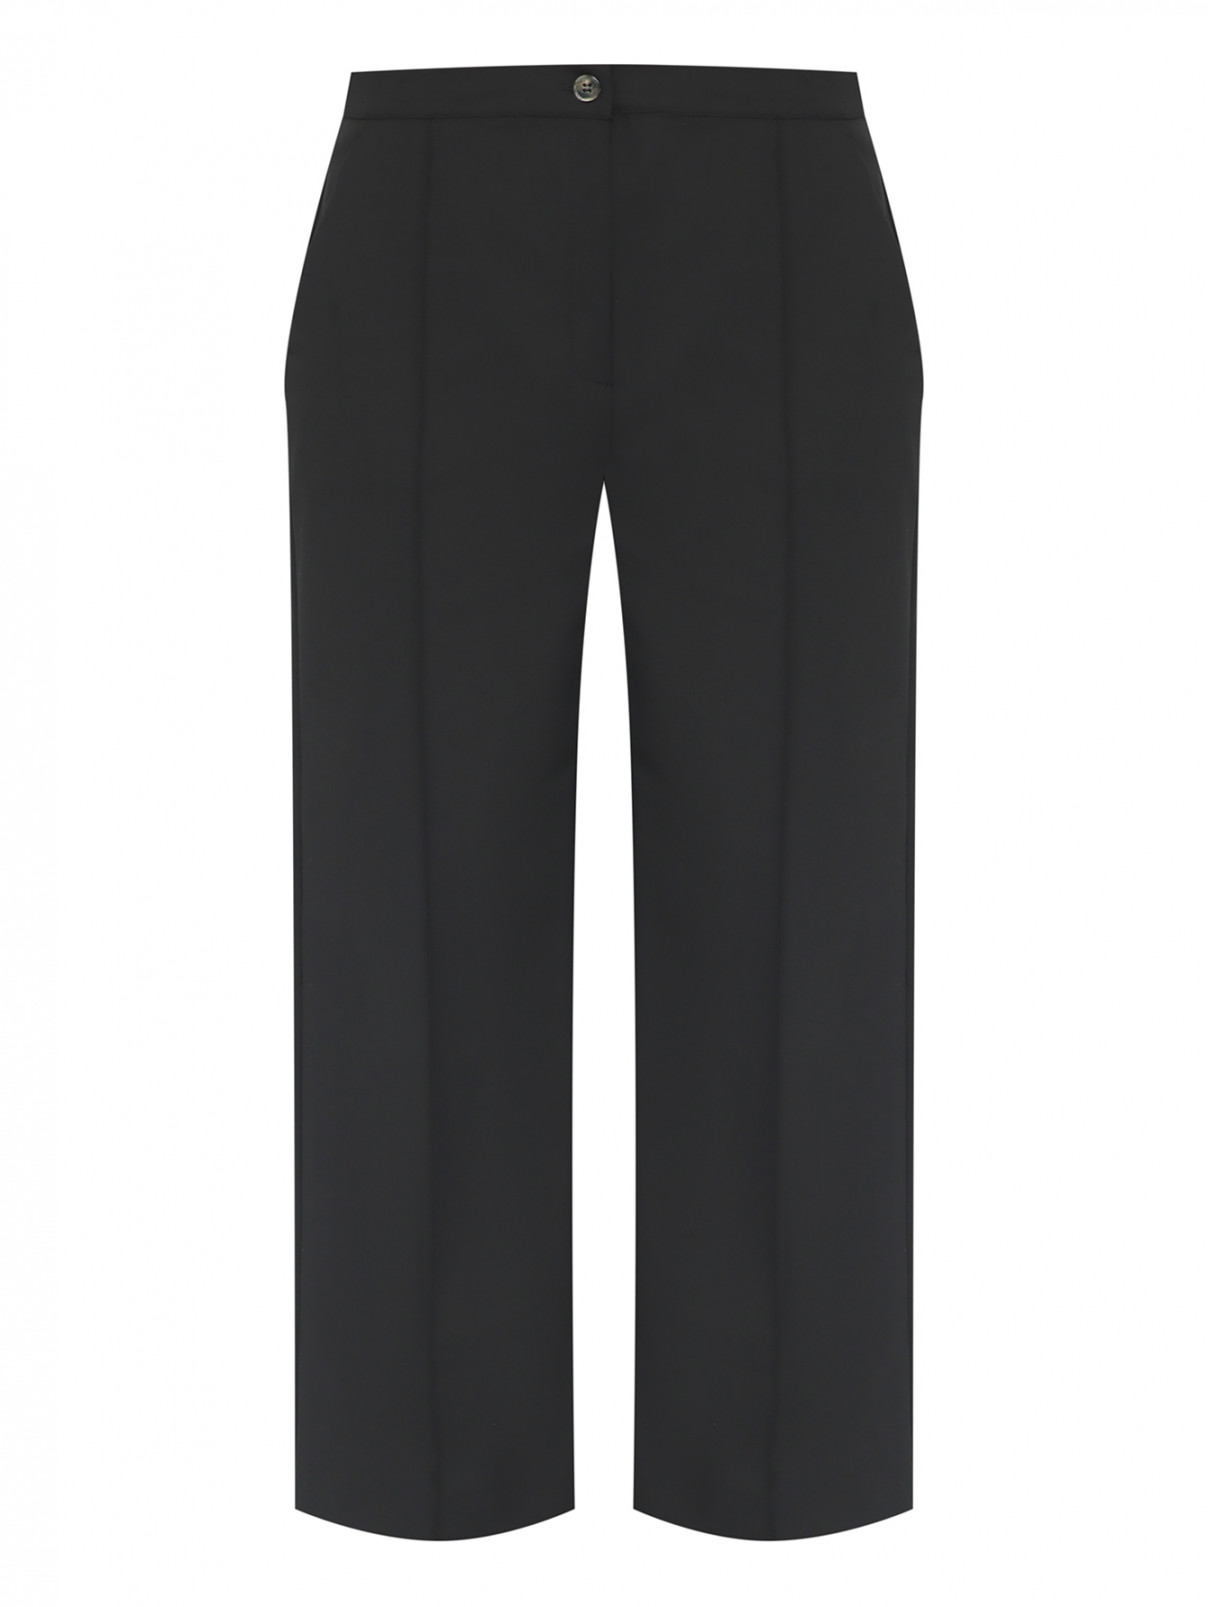 Прямые брюки со стрелками Marina Rinaldi  –  Общий вид  – Цвет:  Черный